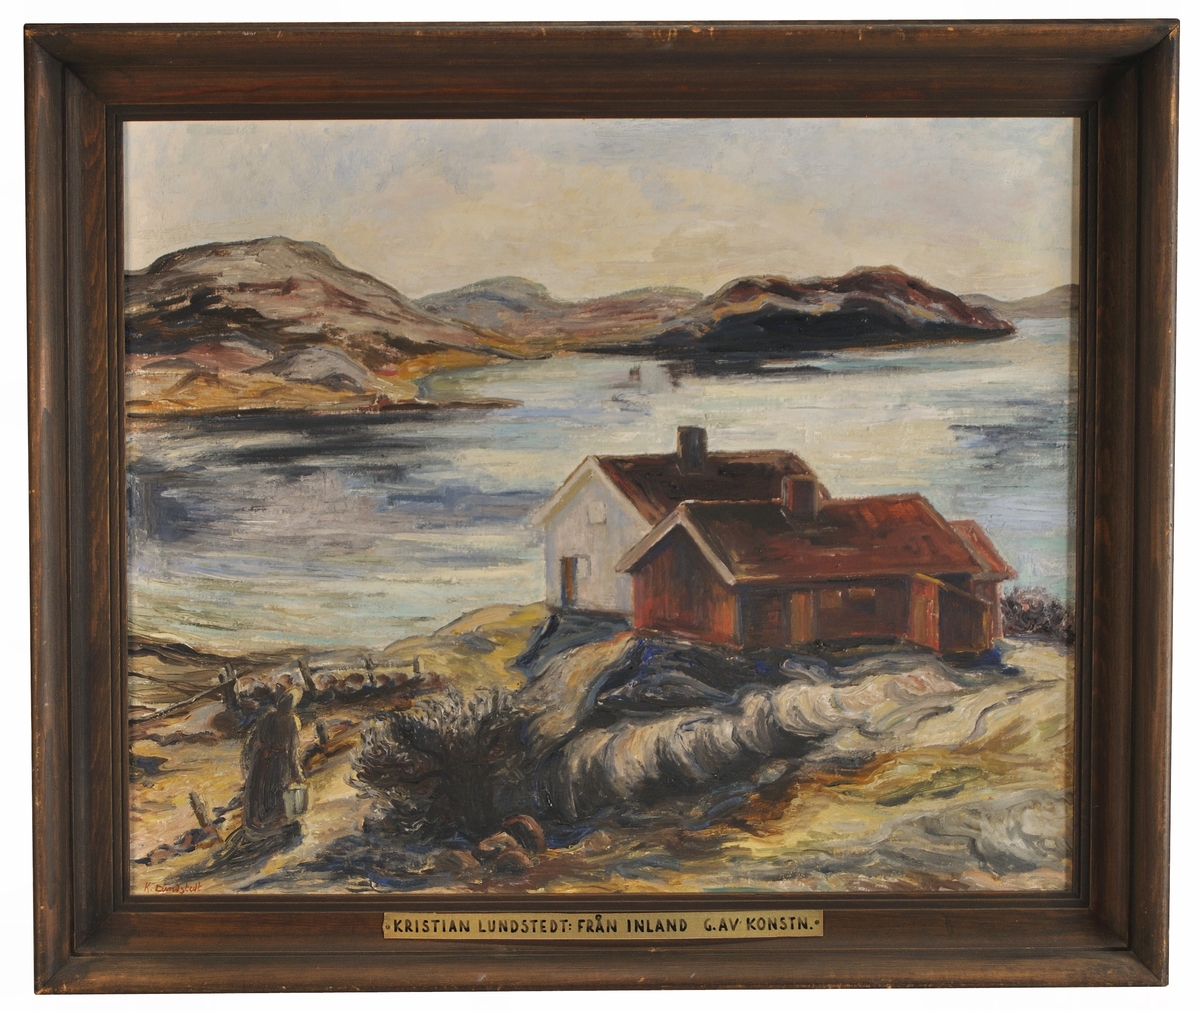 Oljemålning på duk, "Från Inland" av Kristian Lundstedt. Landskap vid bergig kust, i förgrunden en vit stuga och rött uthus; t.v. kommer en kvinna bärande en hink.
(Motivet från Inland i Marstrandstrakten)